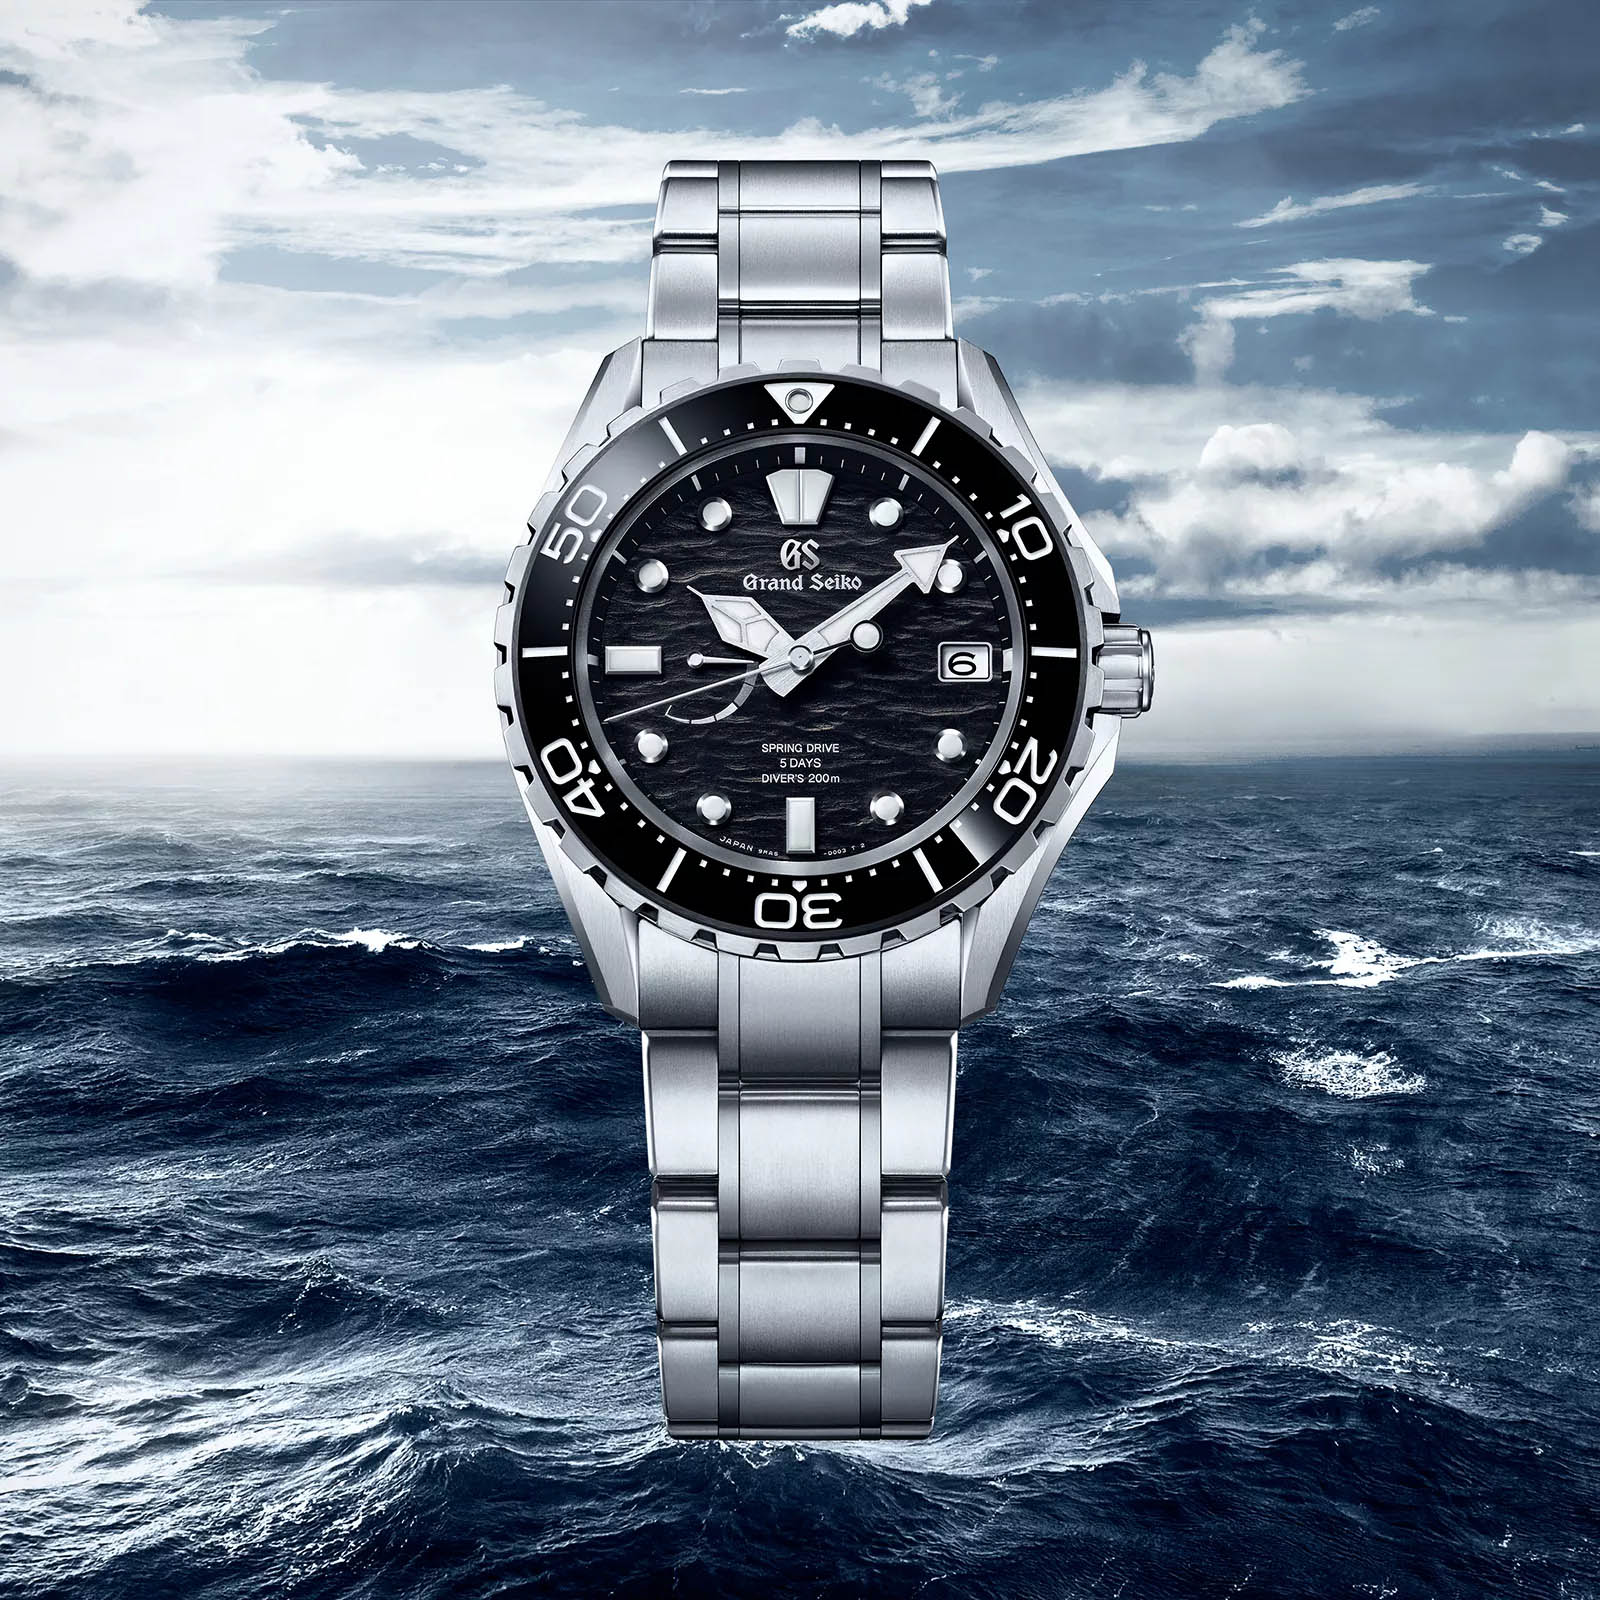 Grand Seiko Spring Drive 5 Days SLGA015 Diver's 200m Watch – Grand Seiko  Official Boutique